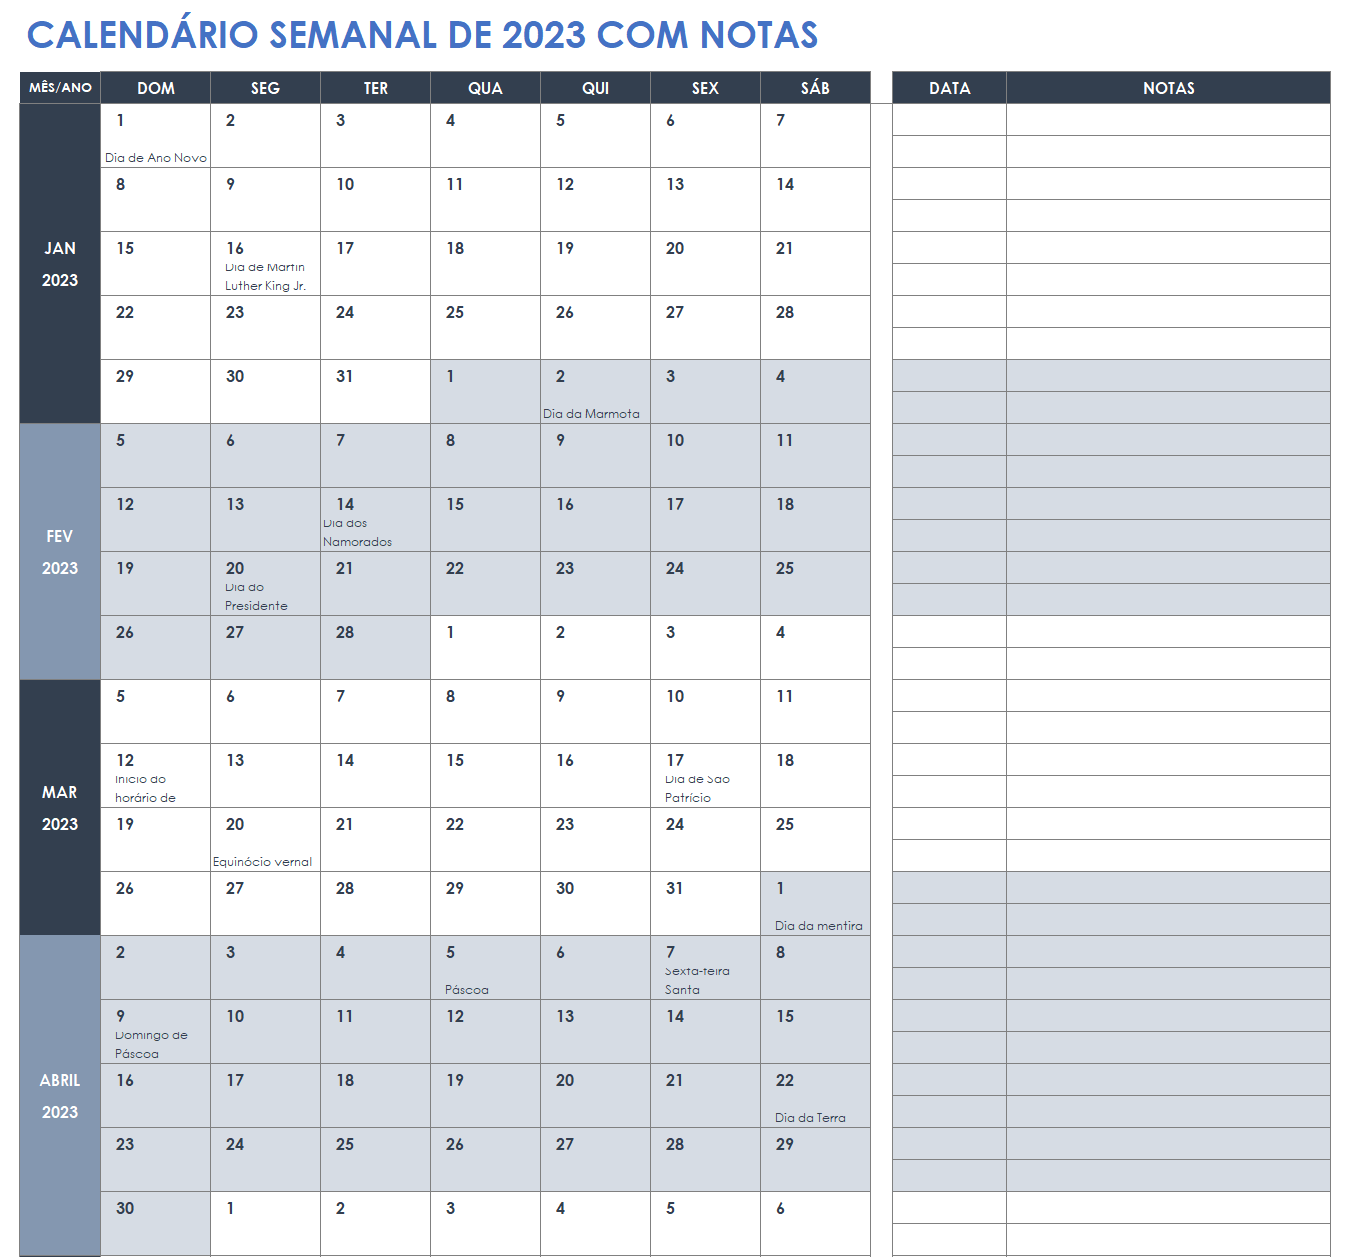 Calendário semanal de 2023 com notas